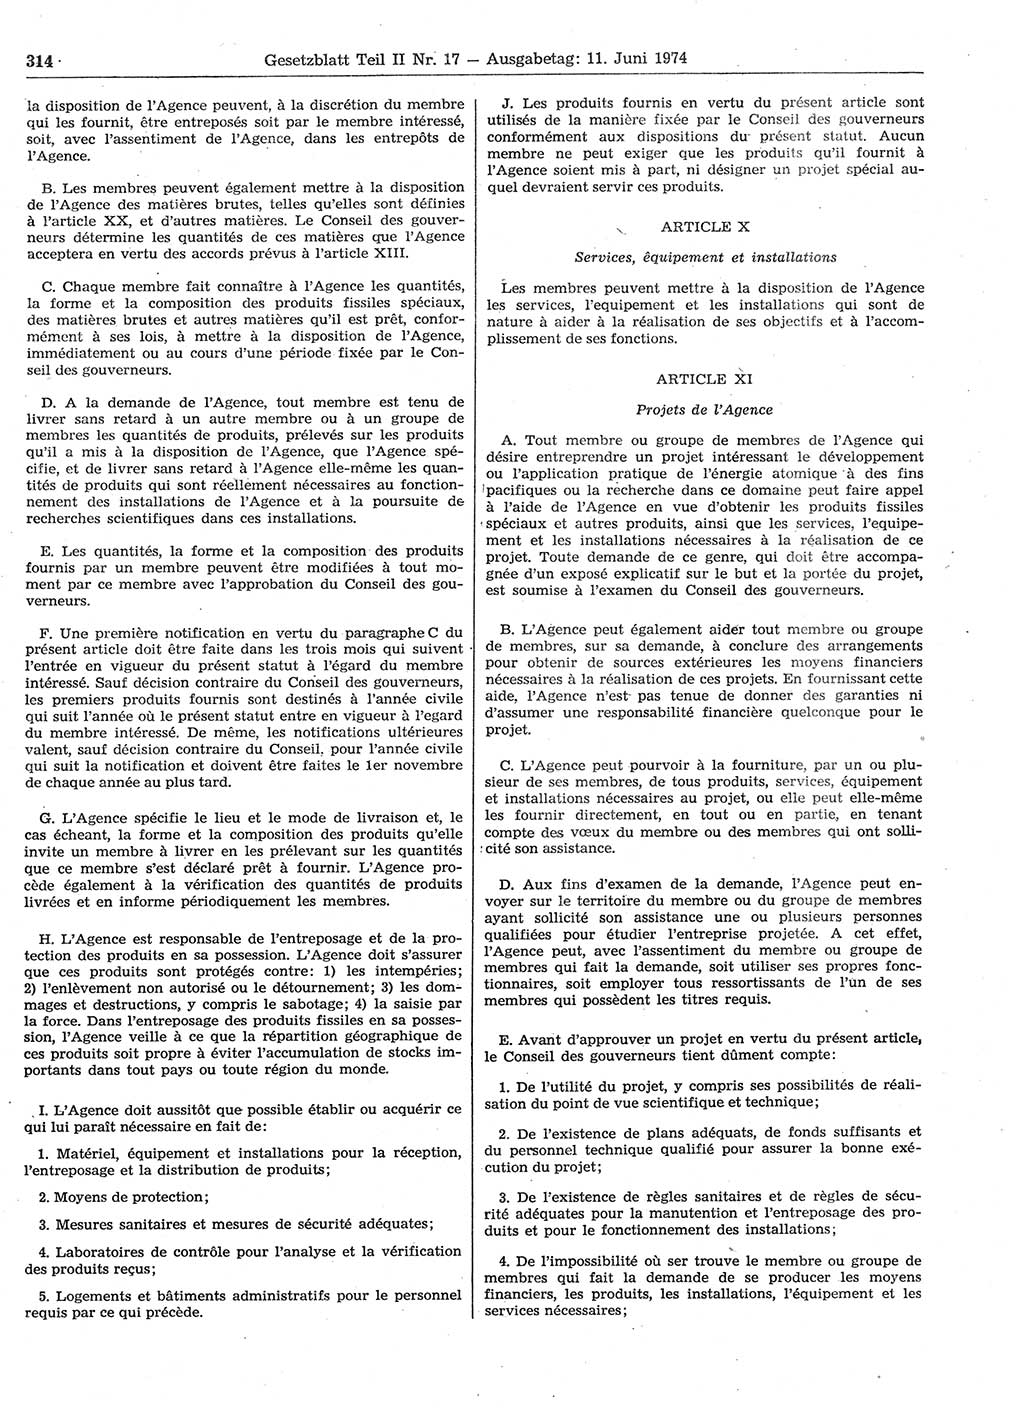 Gesetzblatt (GBl.) der Deutschen Demokratischen Republik (DDR) Teil ⅠⅠ 1974, Seite 314 (GBl. DDR ⅠⅠ 1974, S. 314)